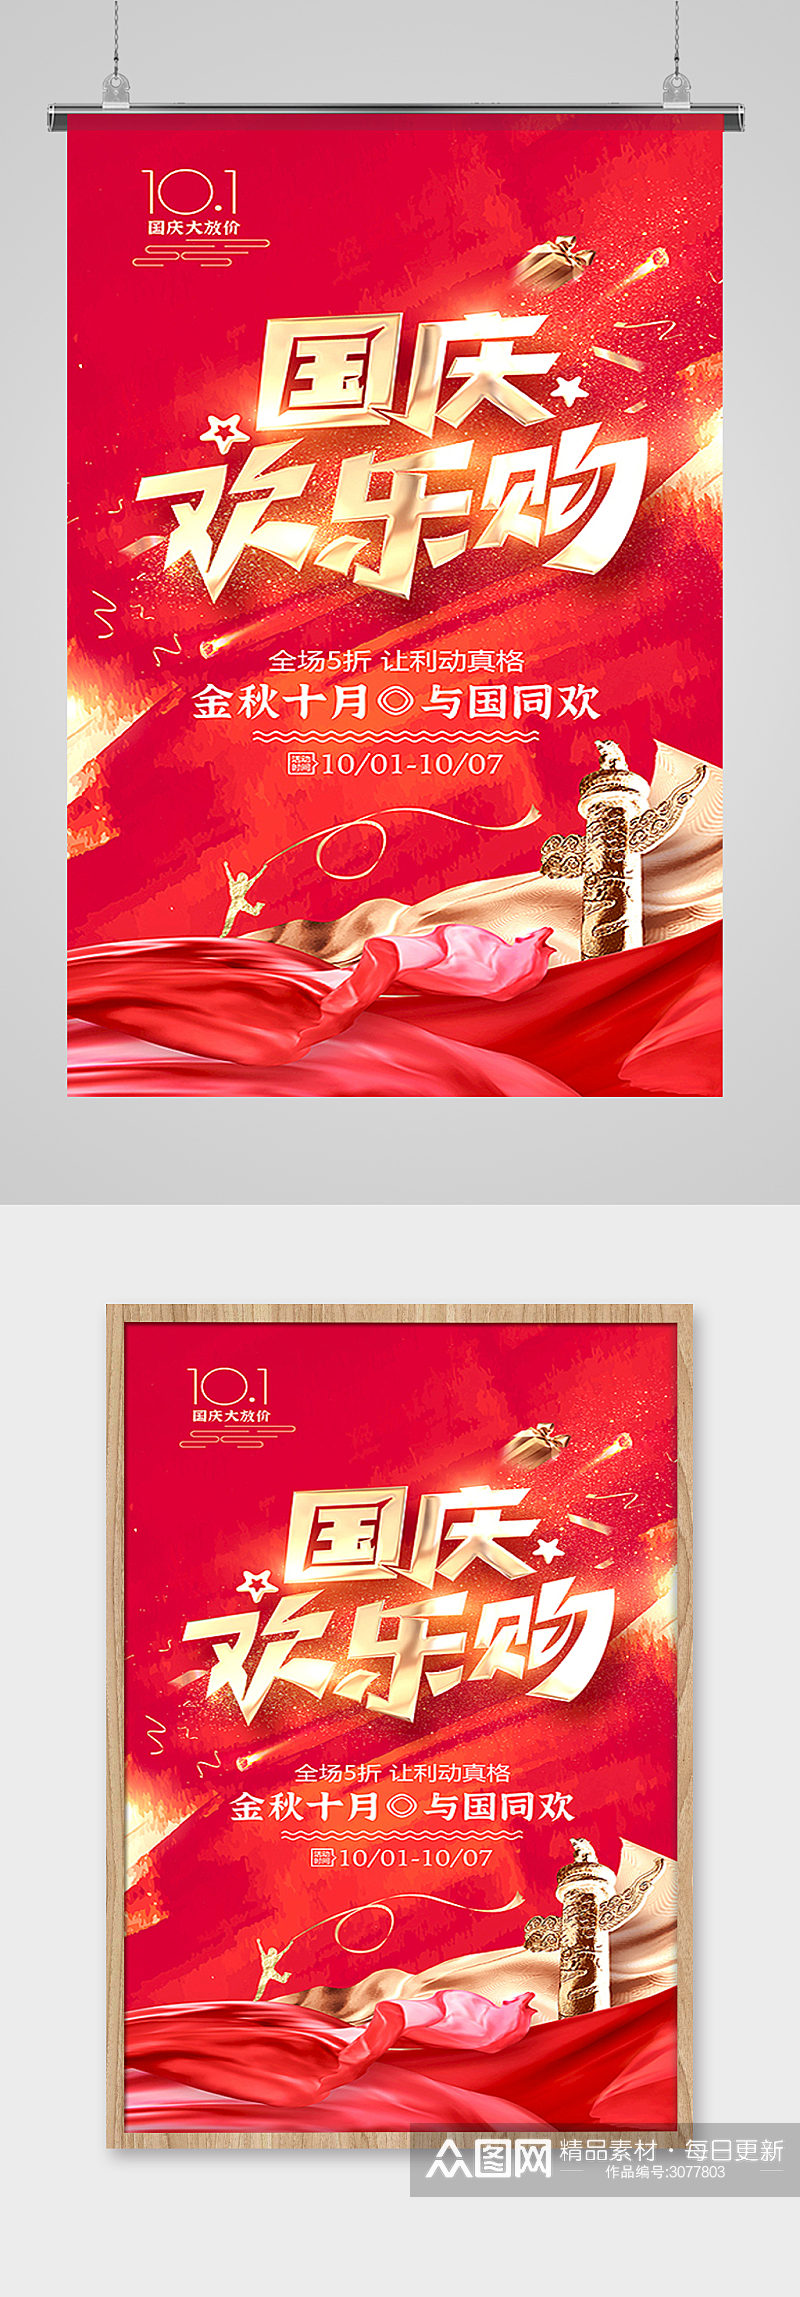 十一国庆节欢乐购红色促销海报设计素材